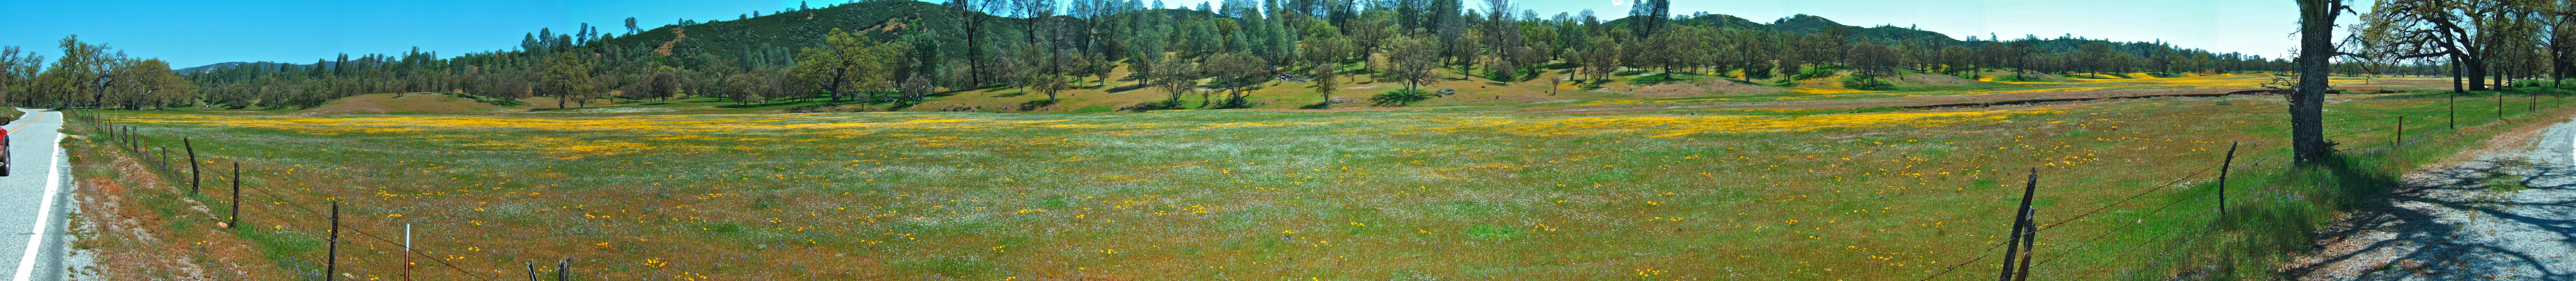 Wildflowers in Upper San Antonio Valley (5).